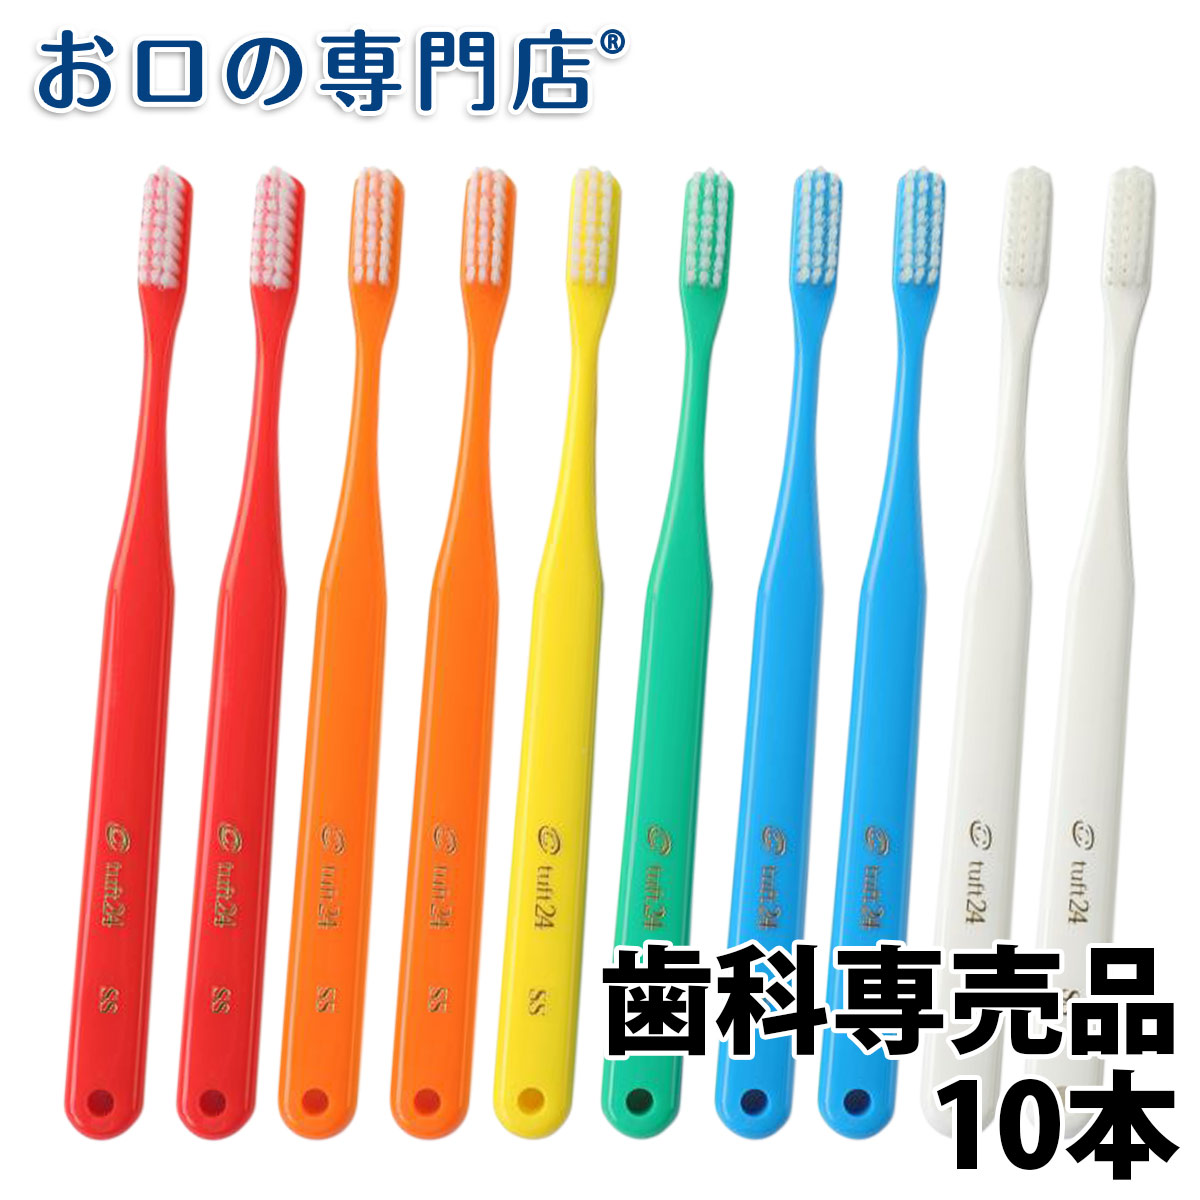 送料無料 人気特価 タフト24 スーパーソフト 8本 歯ブラシ